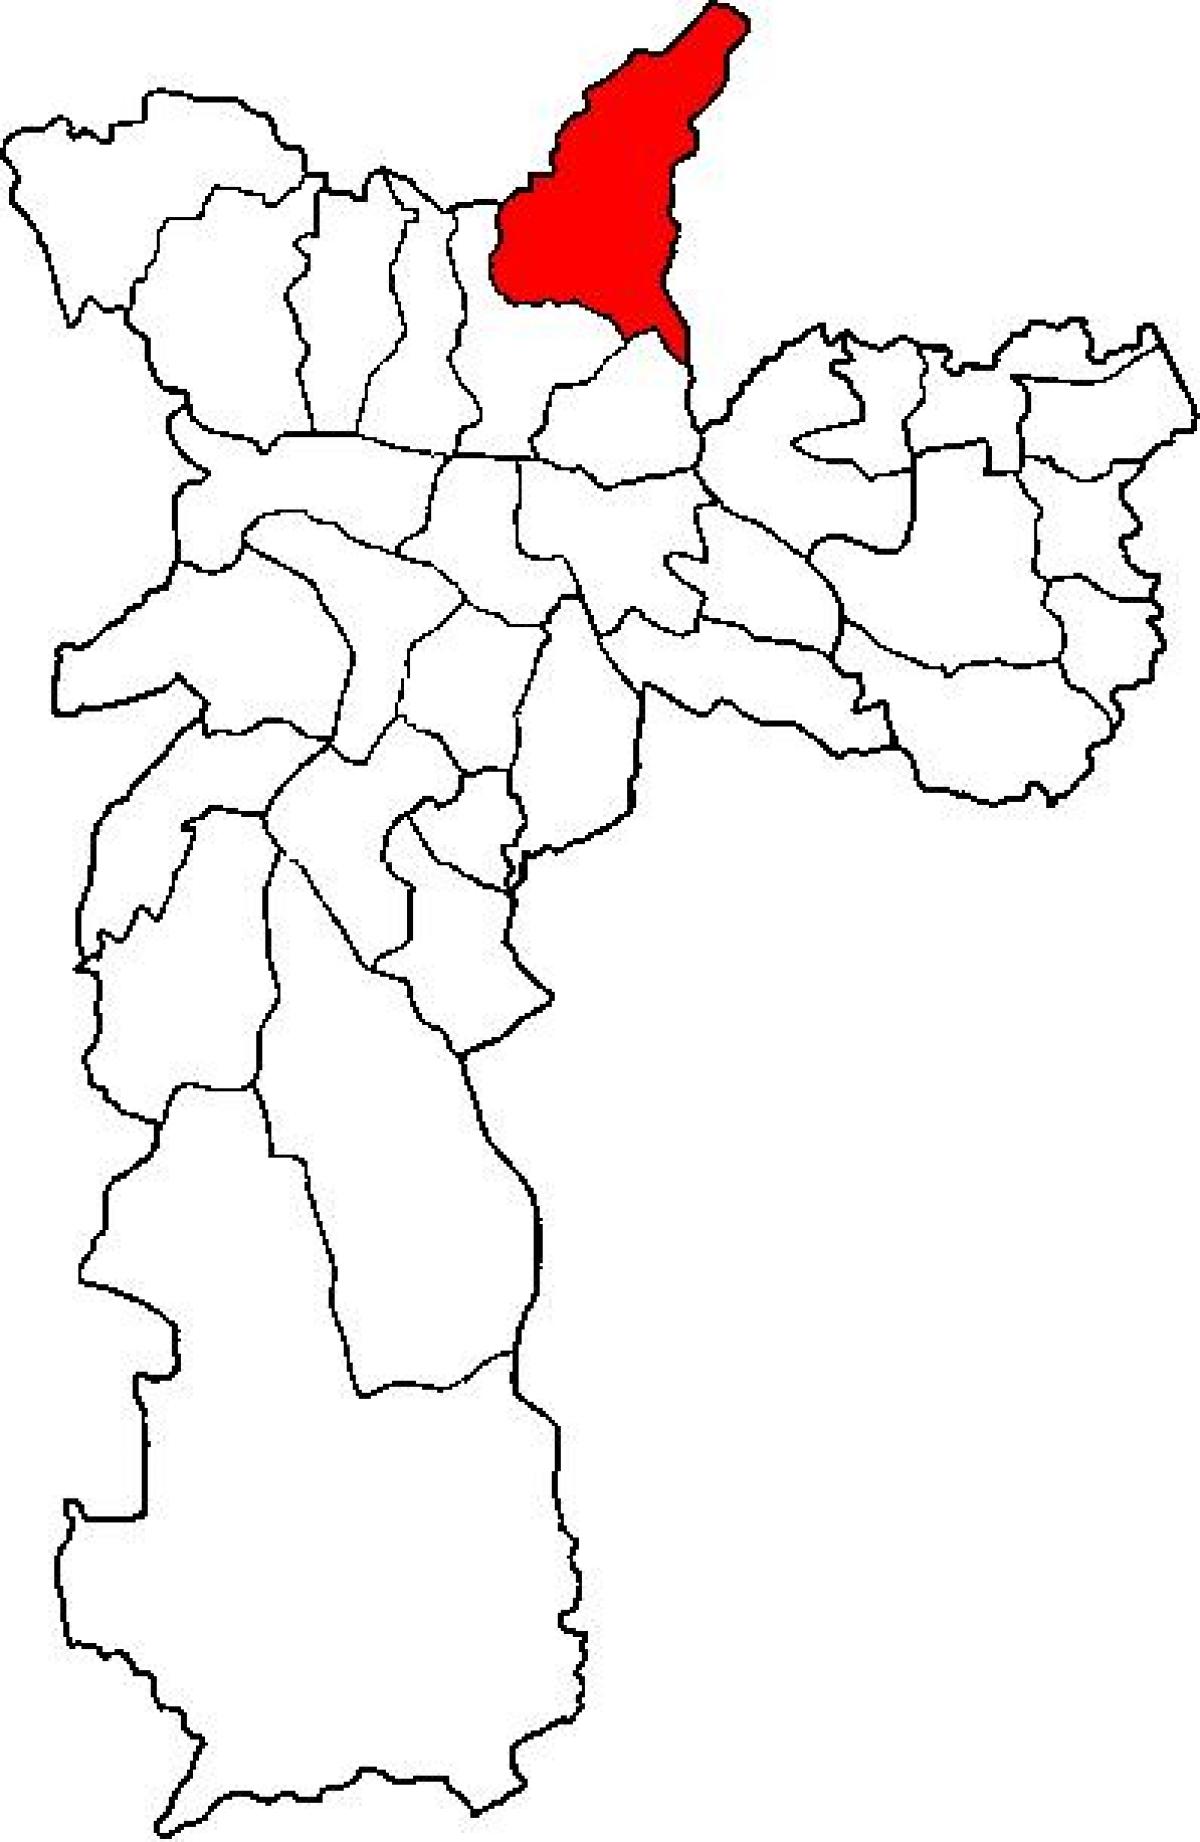 نقشہ کے Jaçanã-Tremembé ذیلی صوبے ساؤ پالو